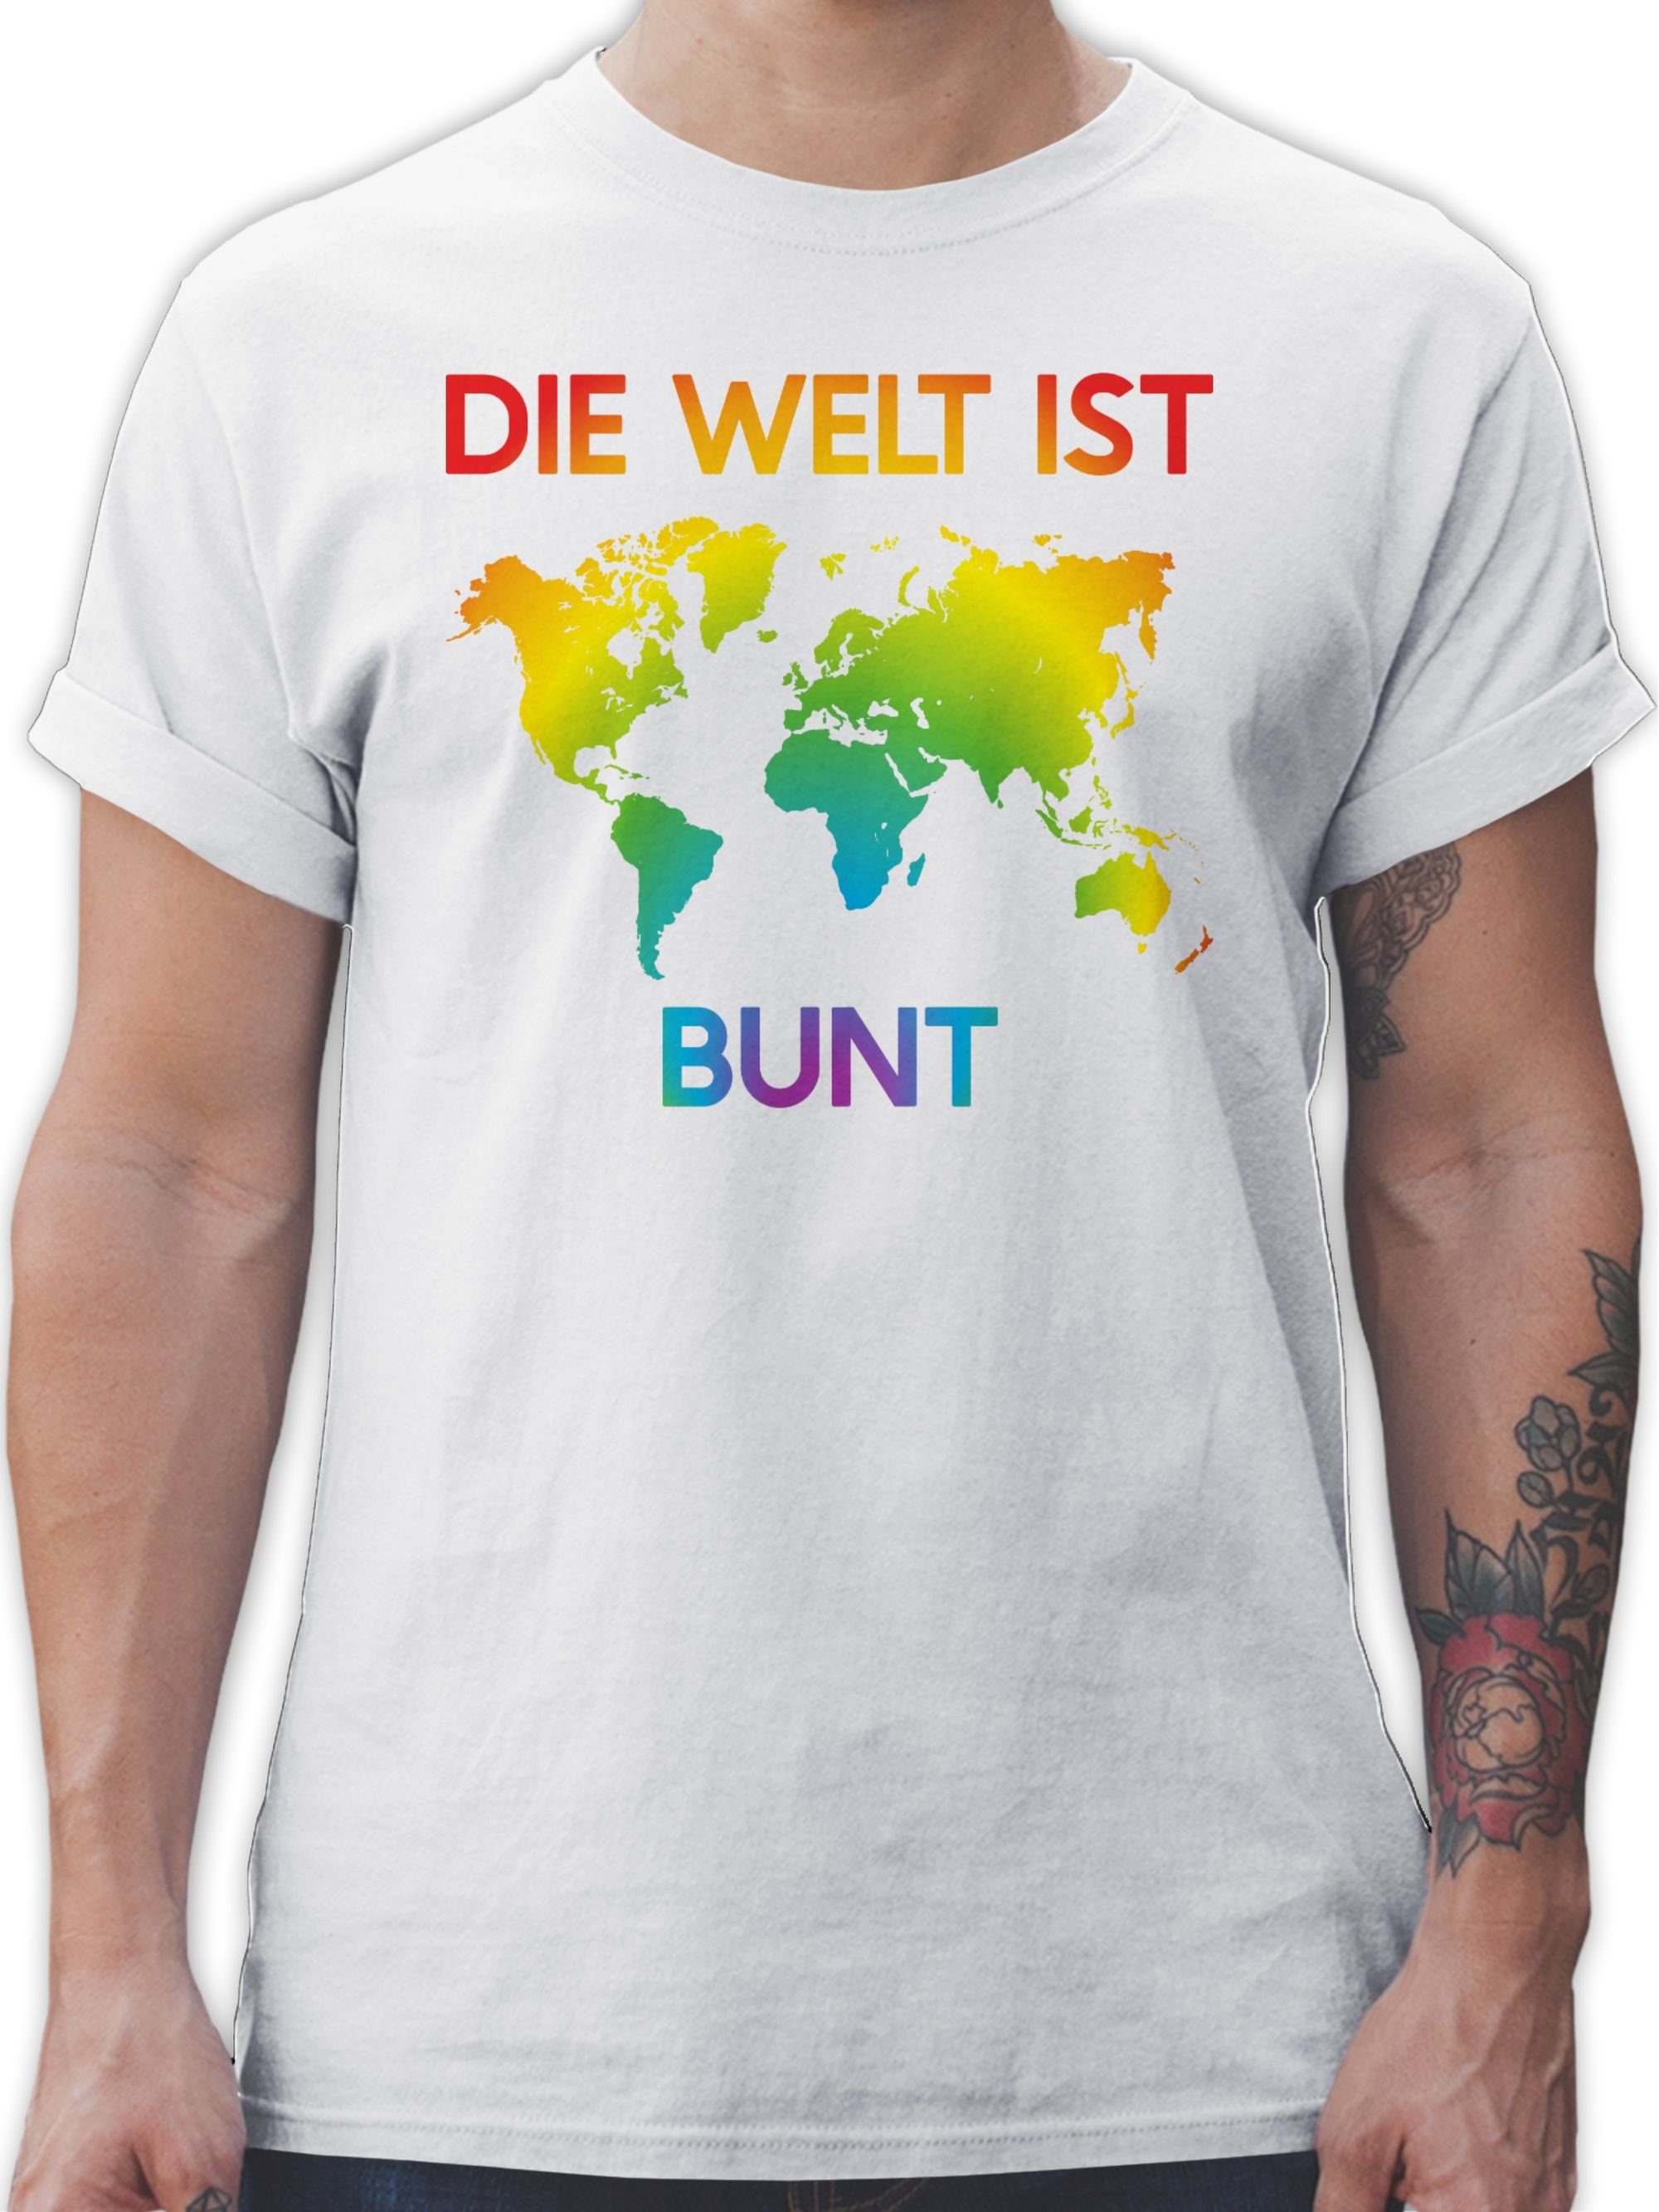 [Zuerst vertrauen] Shirtracer T-Shirt Farben Welt Die 2 LGBT Kleidung ist Weiß bunt Regenbogen –